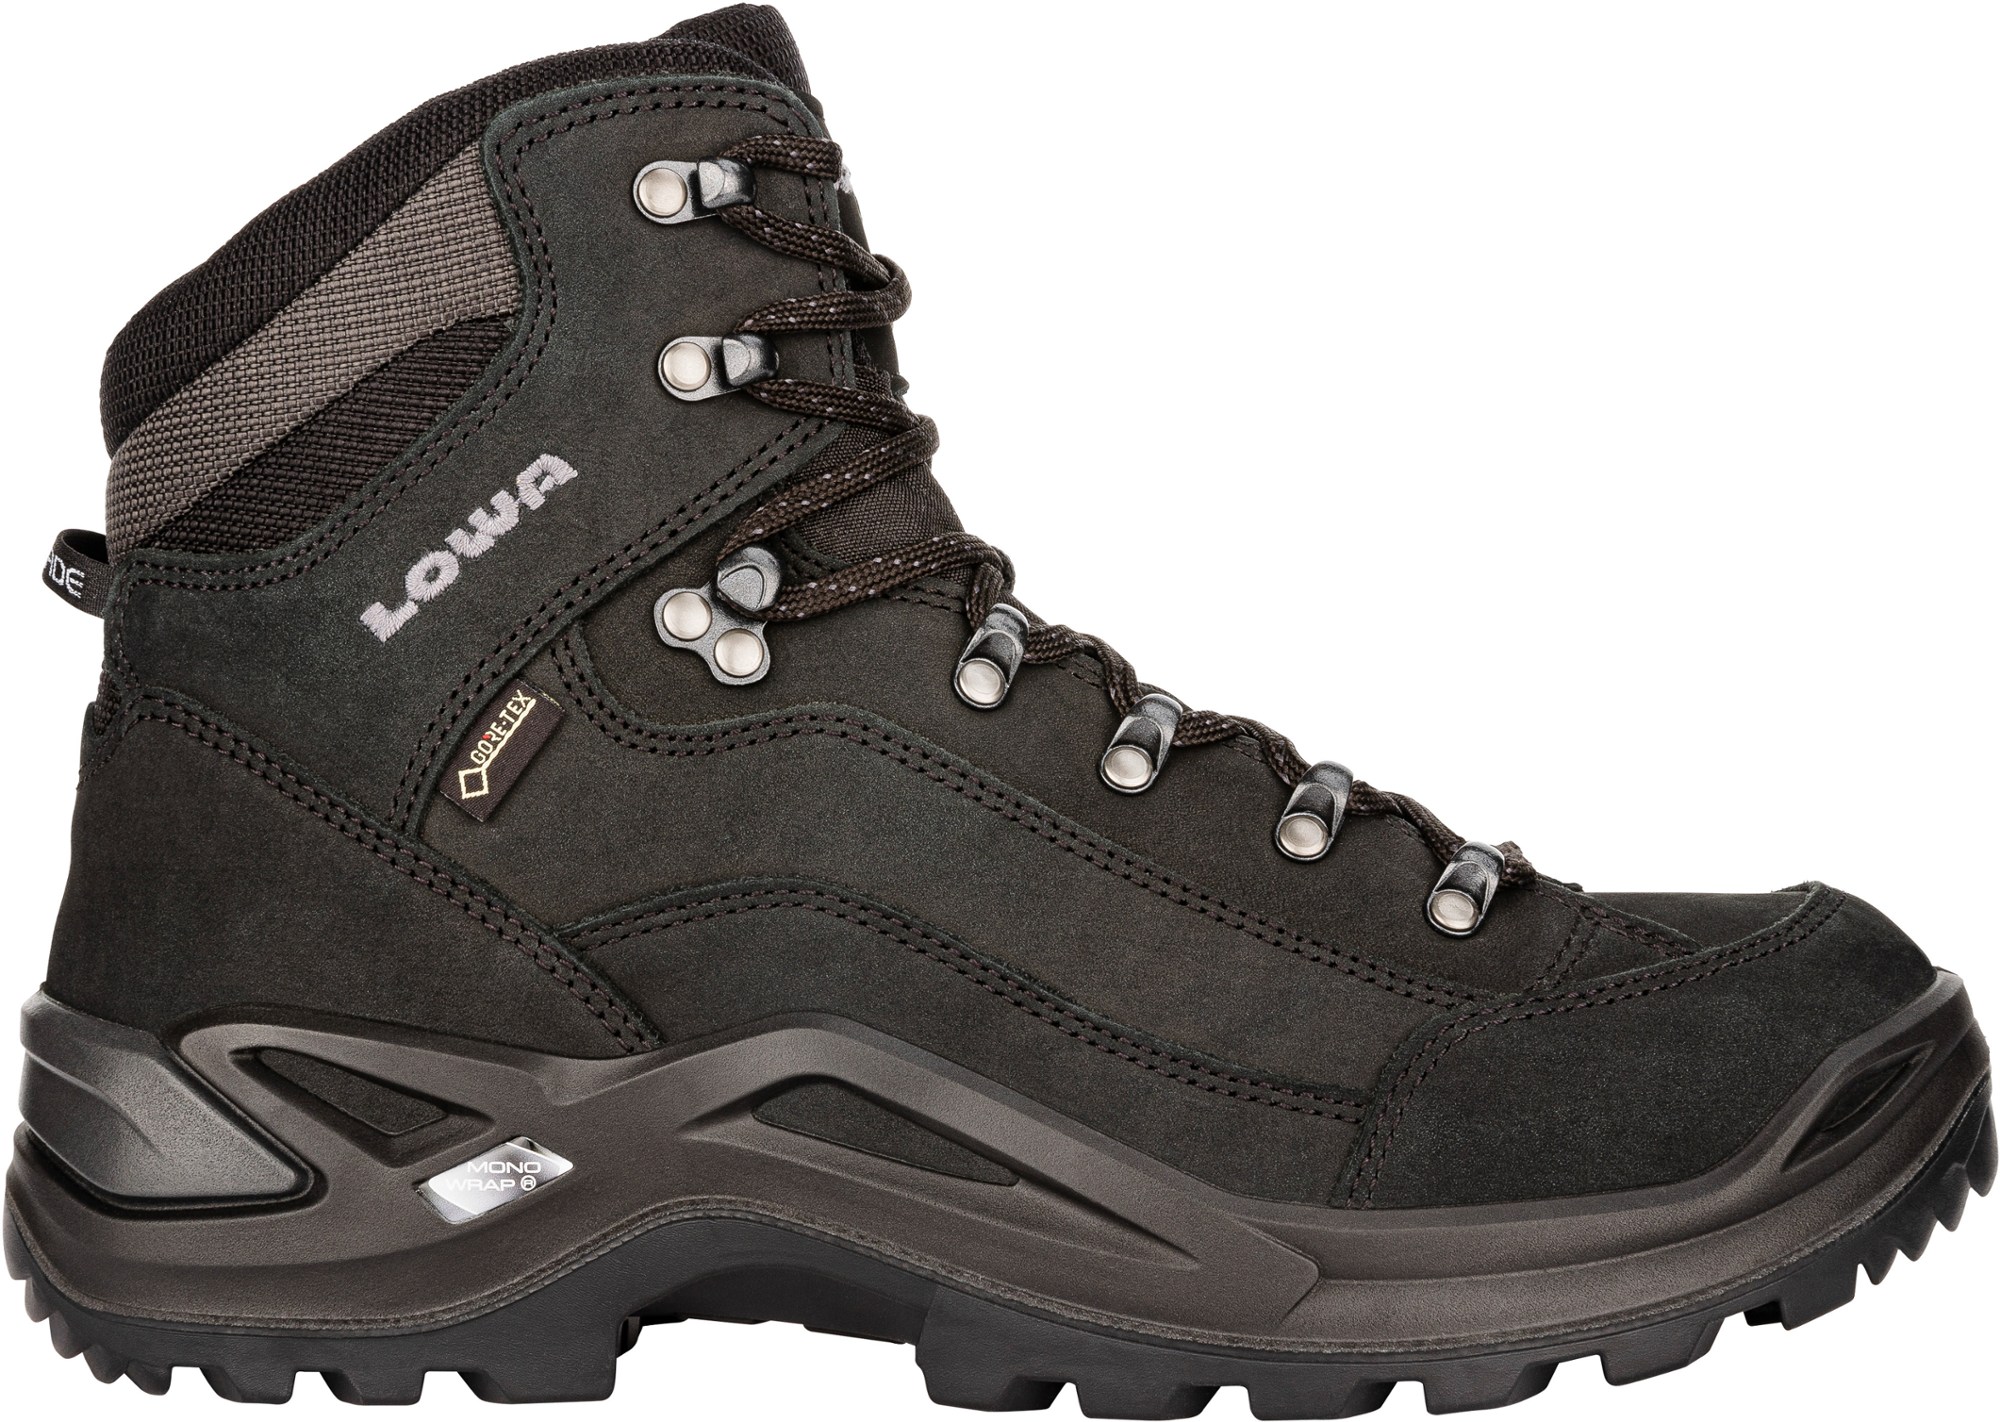 Походные ботинки Renegade GTX Mid — мужские Lowa, черный мужские водонепроницаемые походные ботинки черные ботинки для походов и горного туризма обувь для улицы для альпинизма для зимы 2022